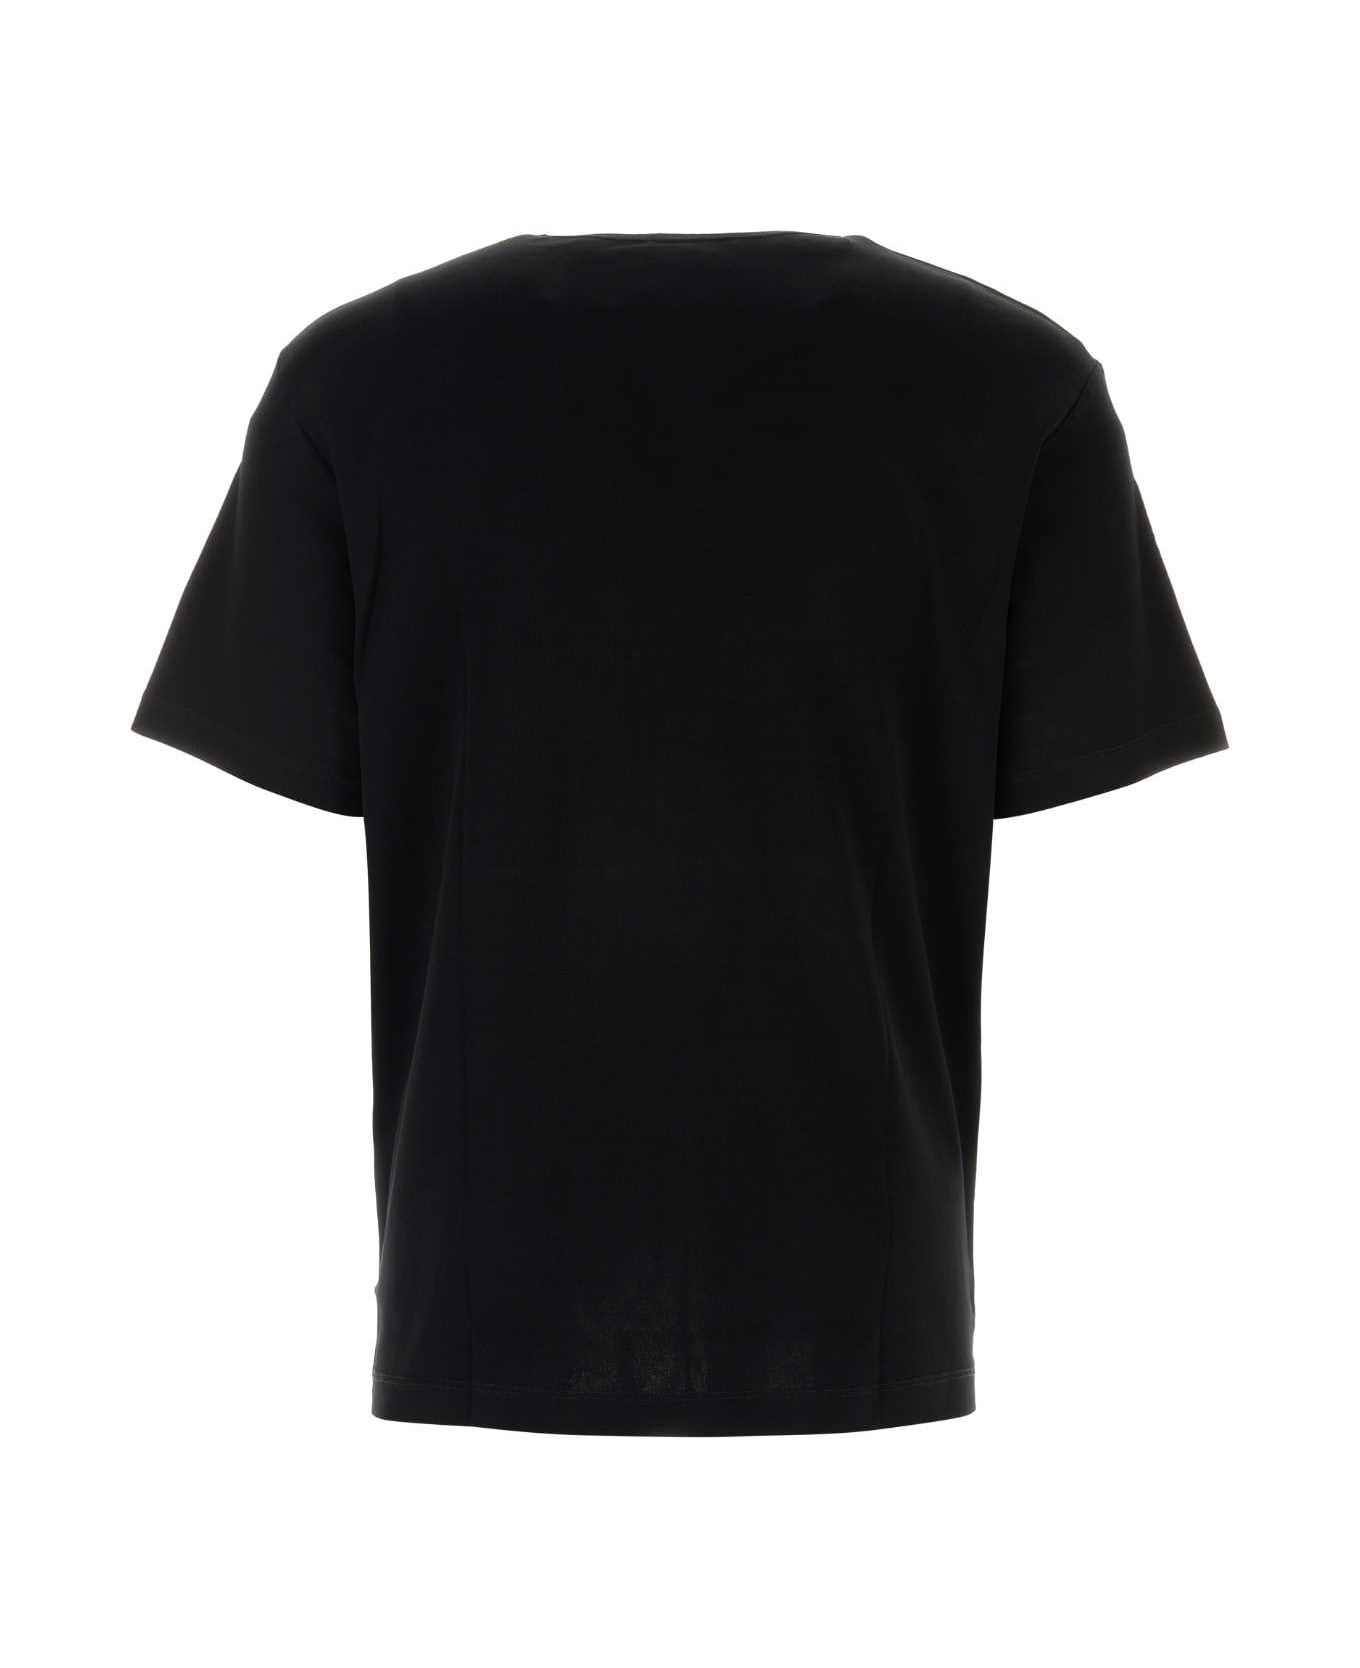 Lemaire Black Cotton T-shirt - BLACK